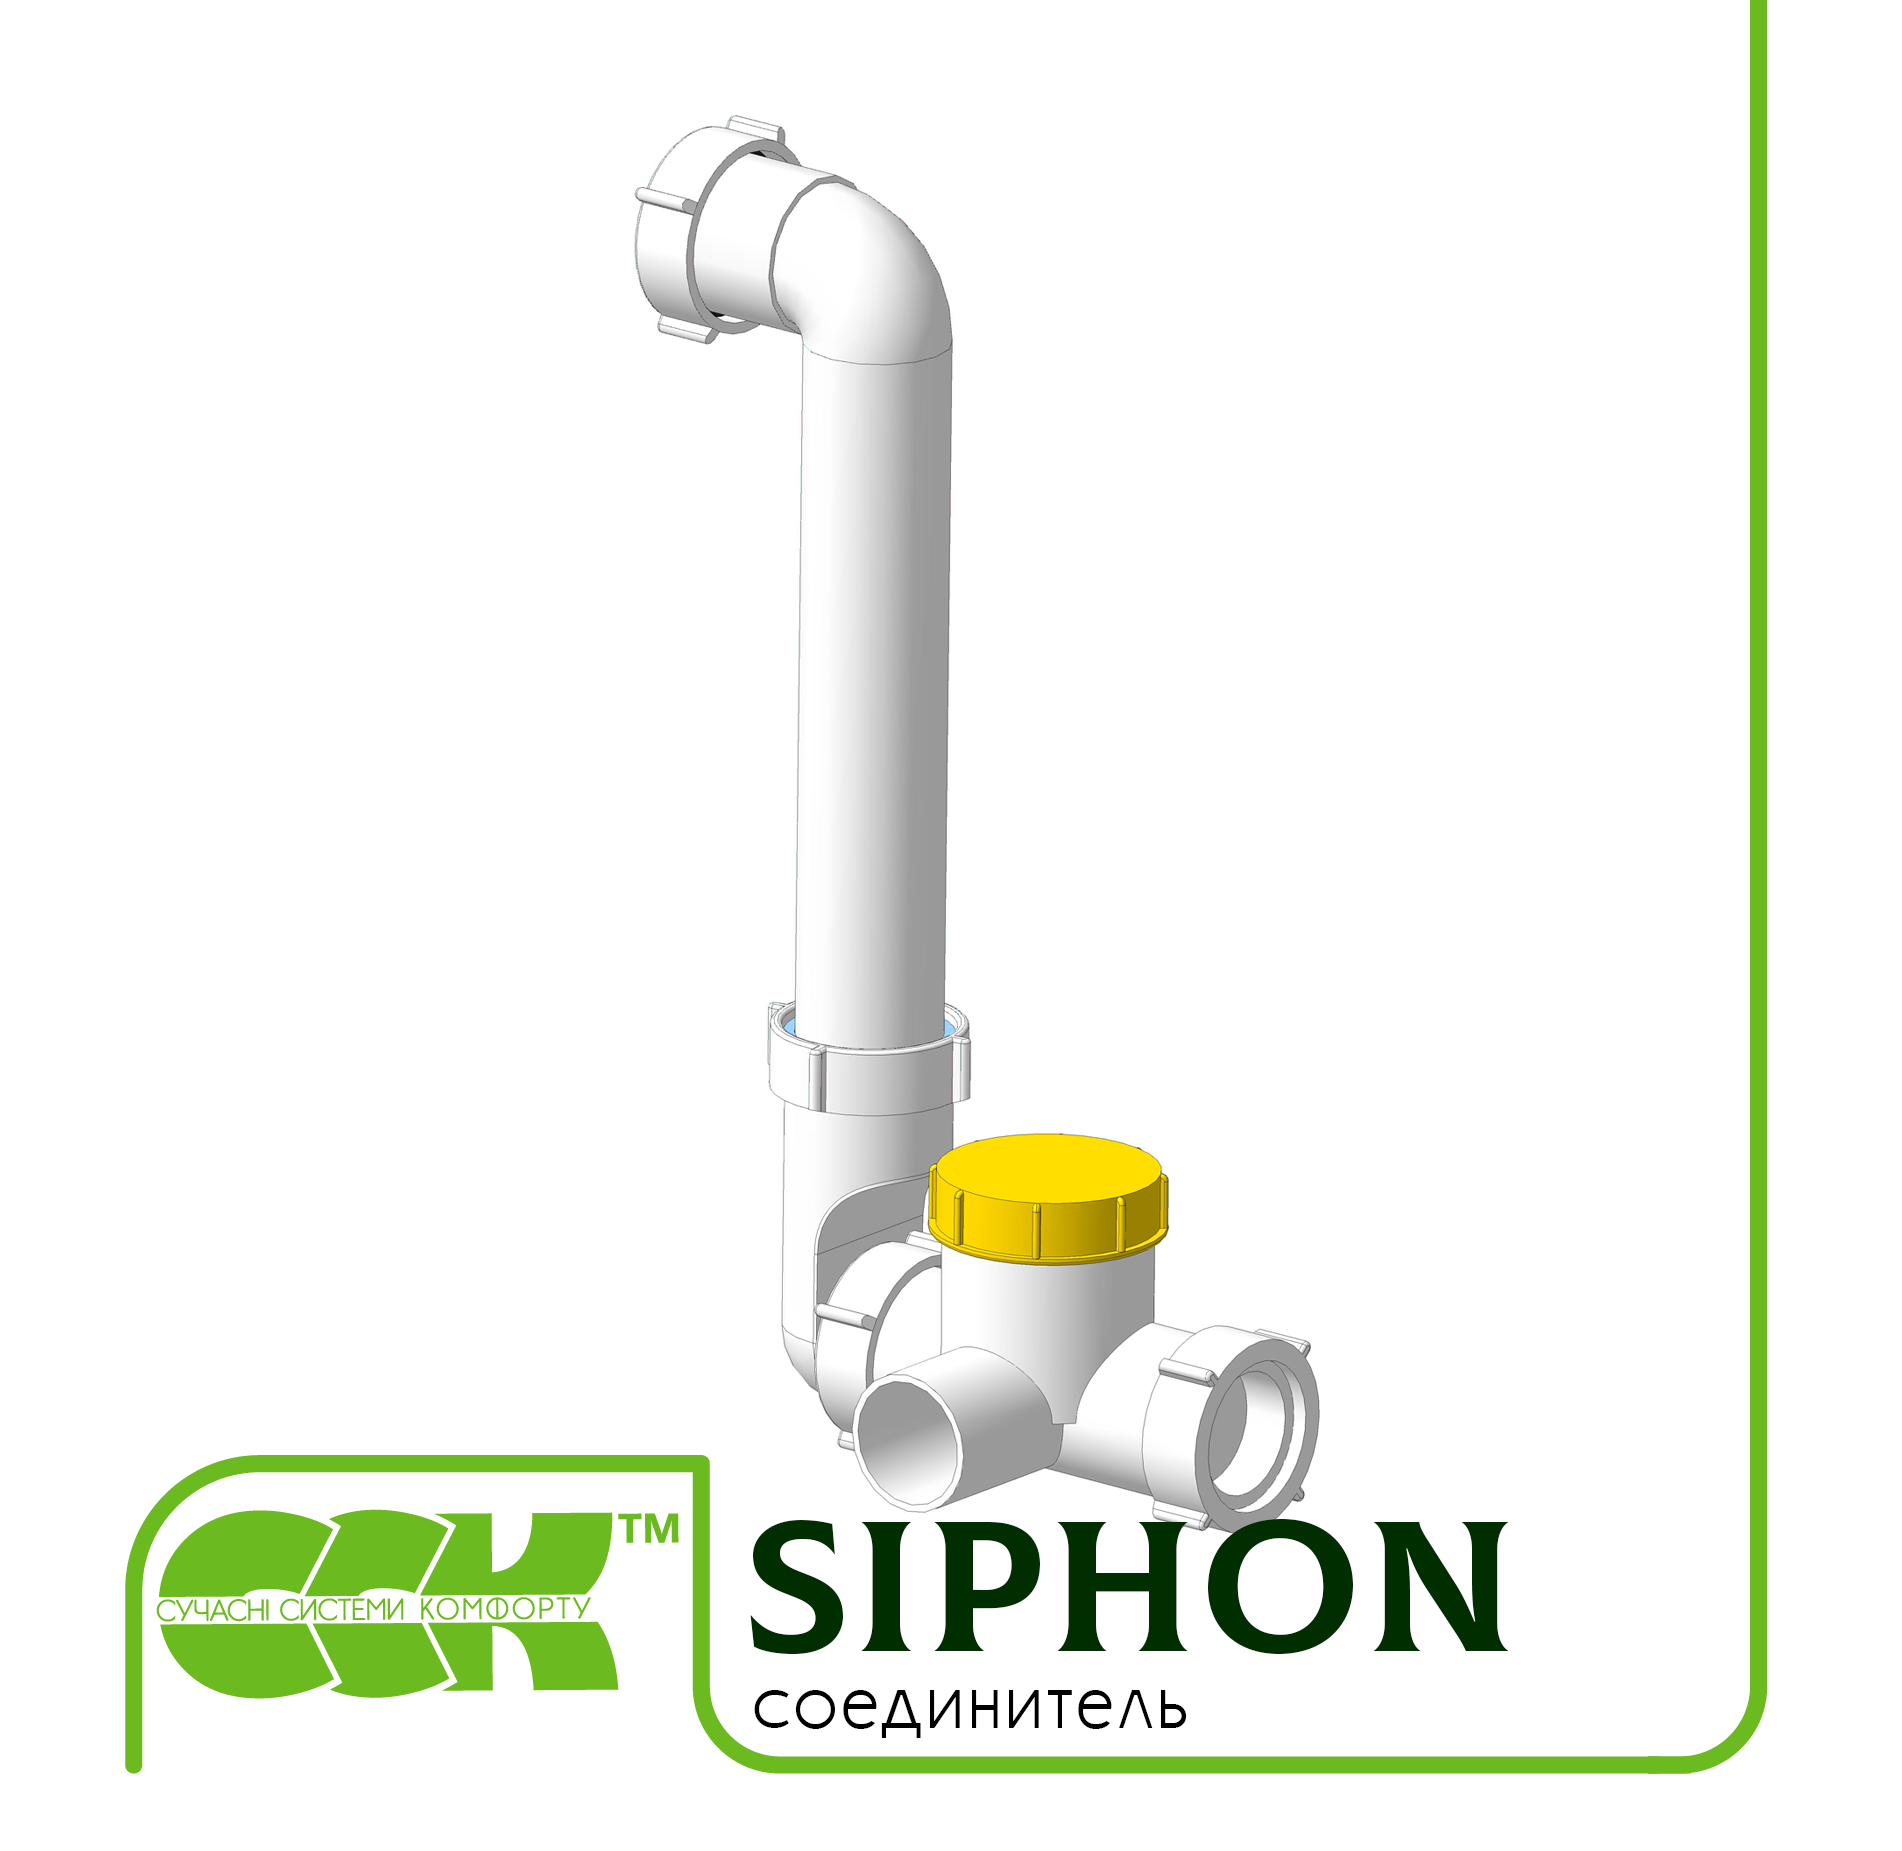 Соединитель Siphon (для установки со стороны разряжения)